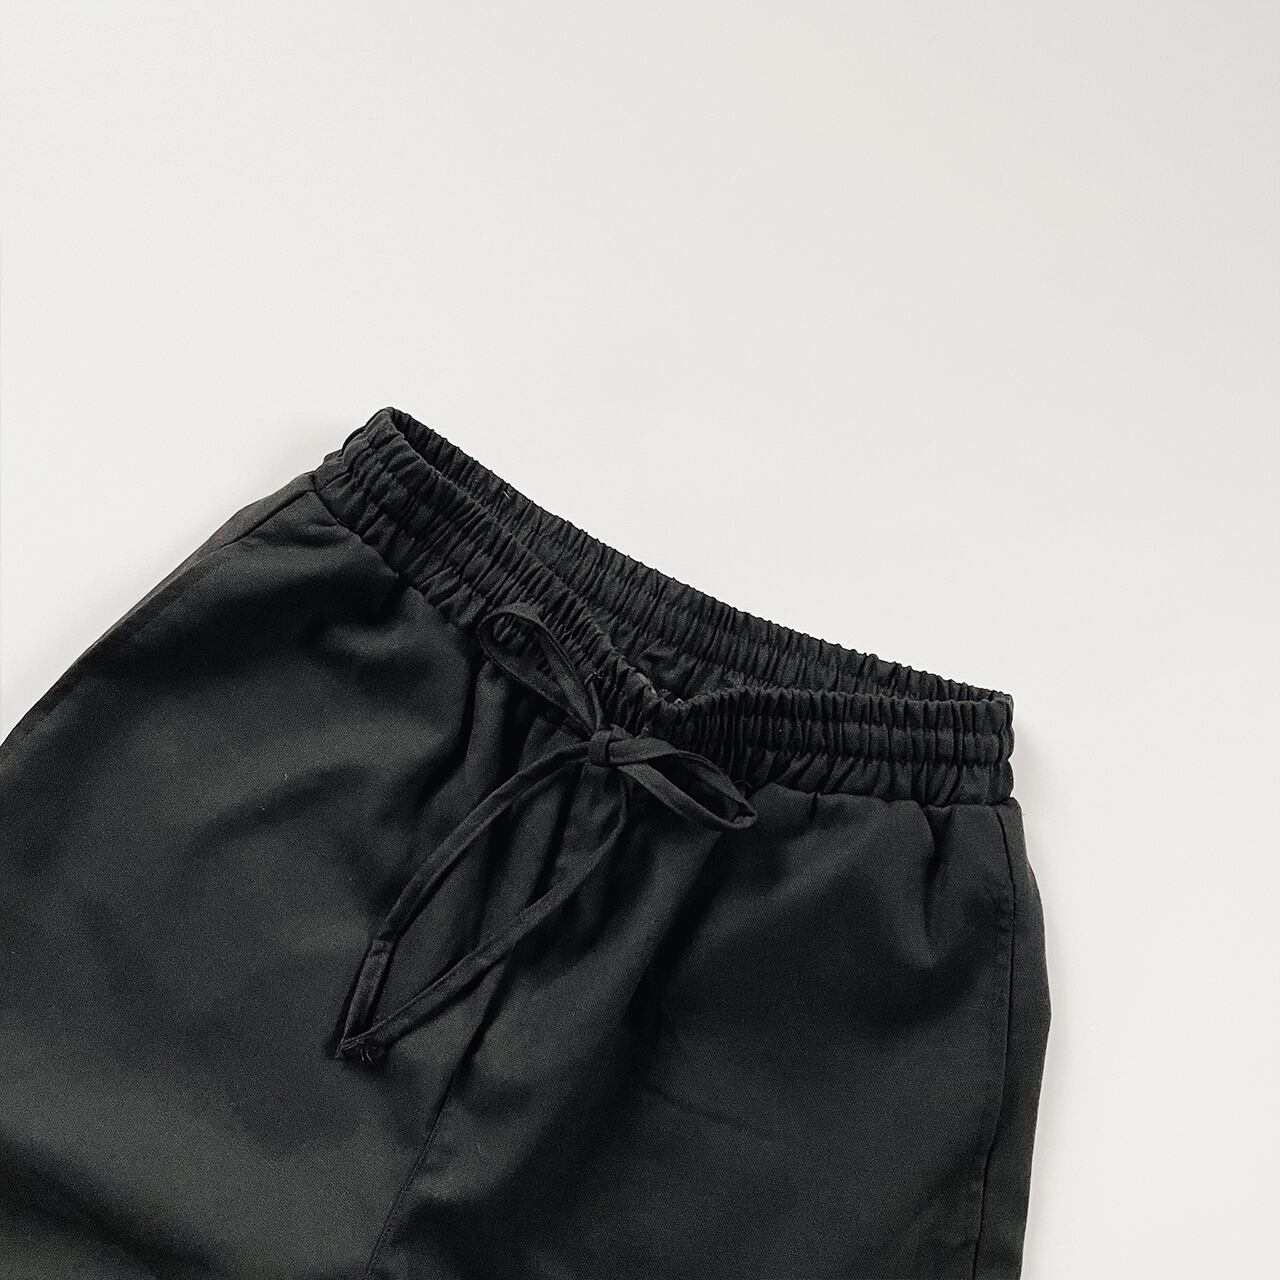 Linen wide pants (black)